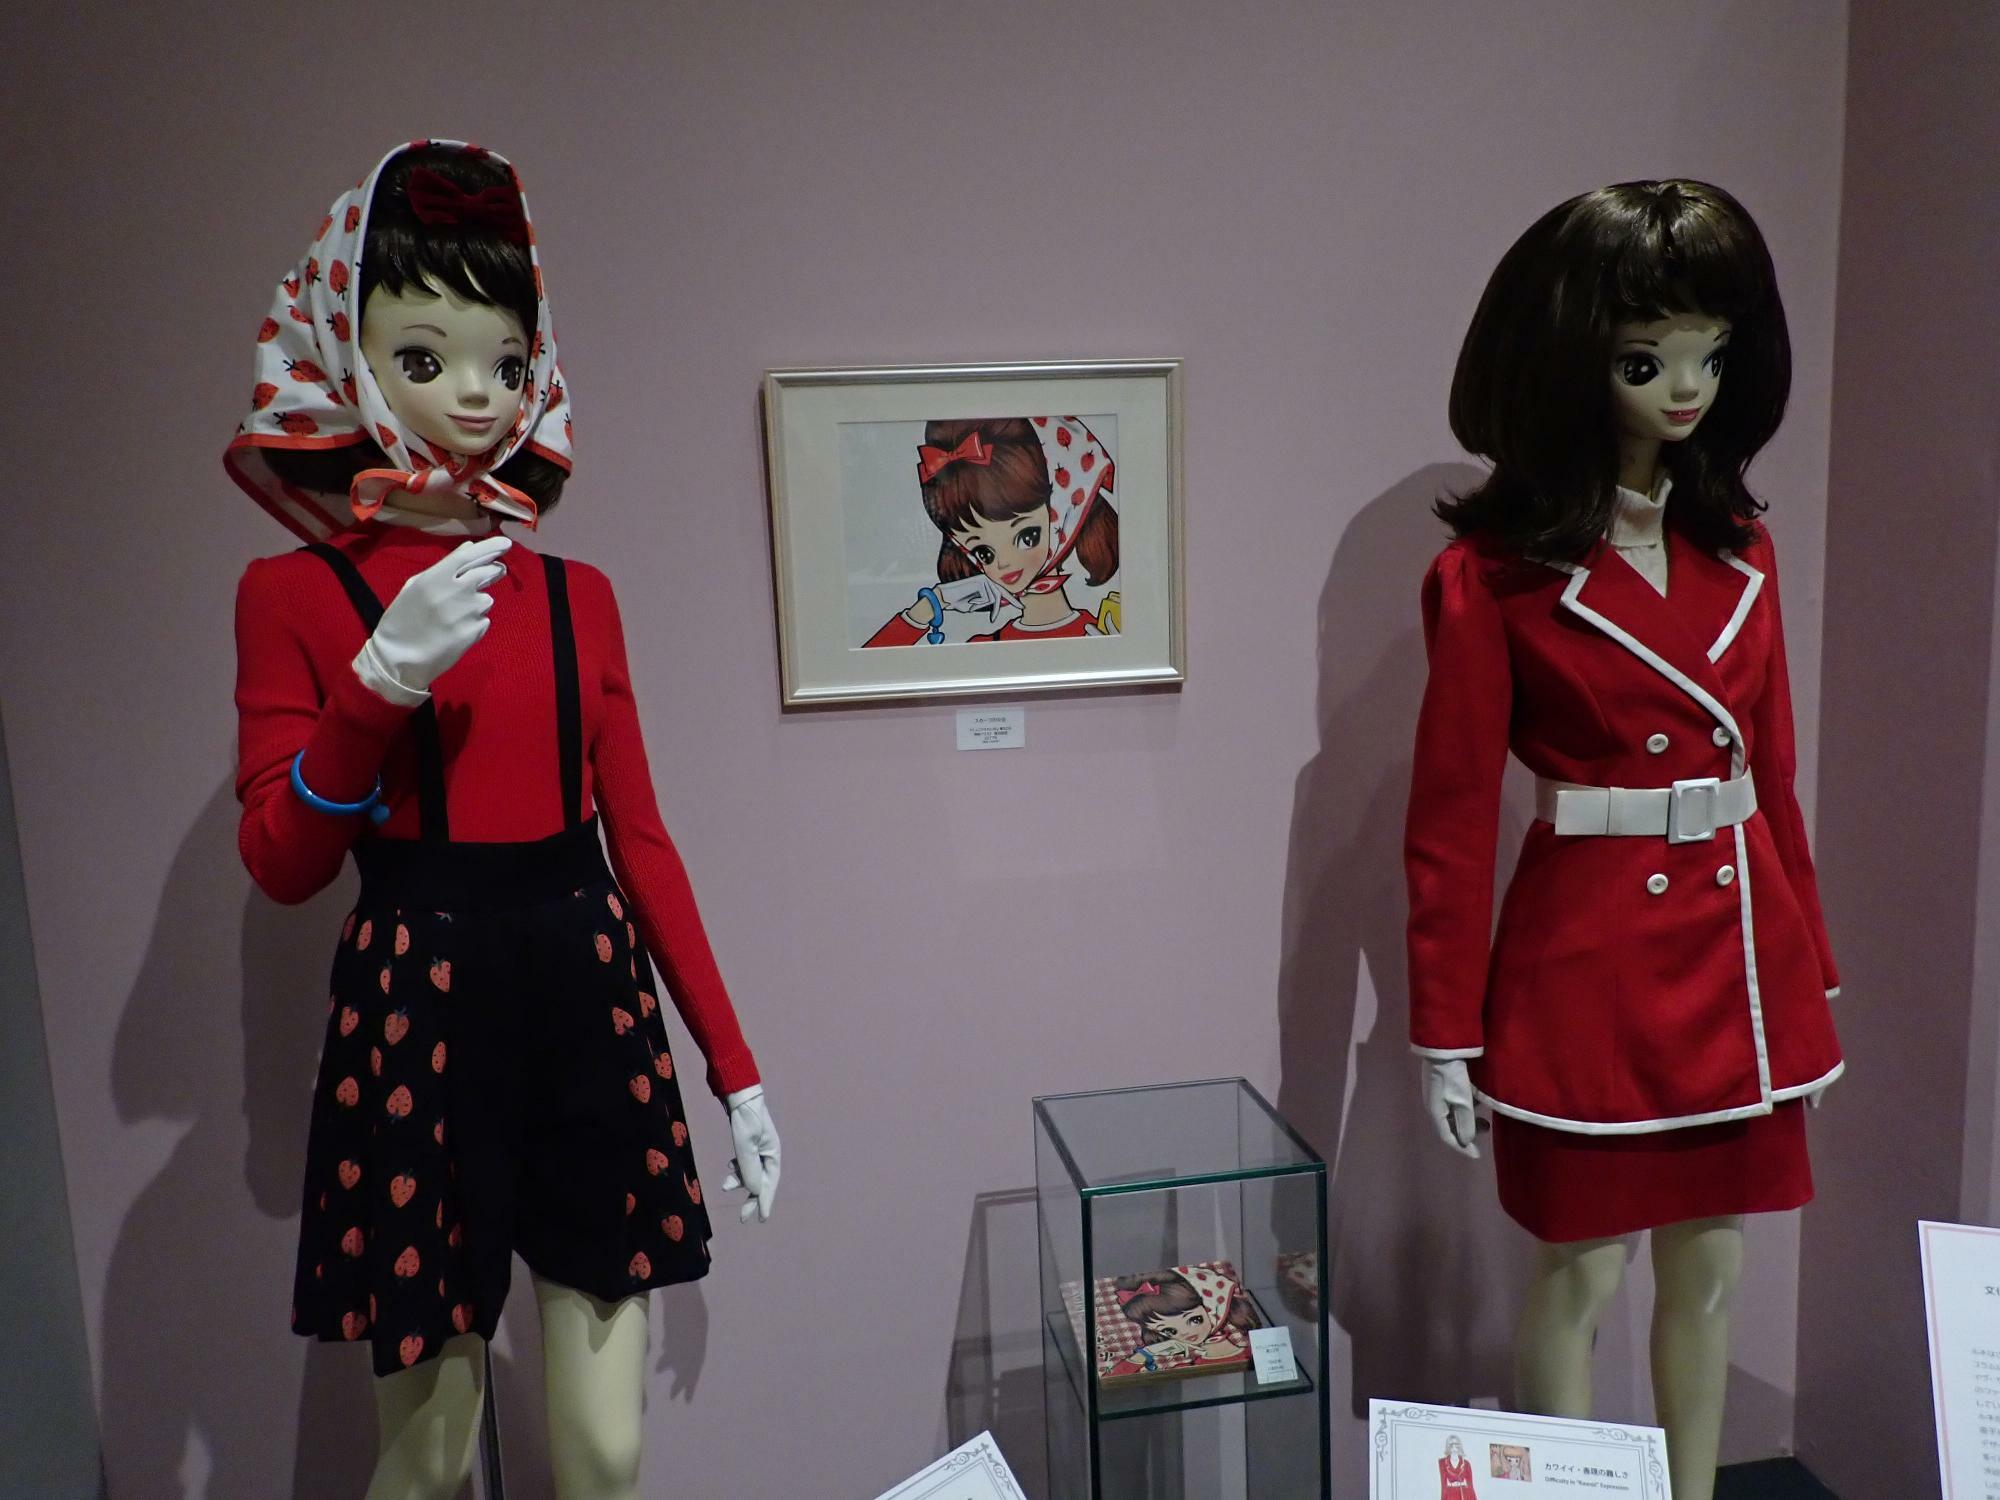 ルネガールの原画とそのデザインからの衣装の展示。